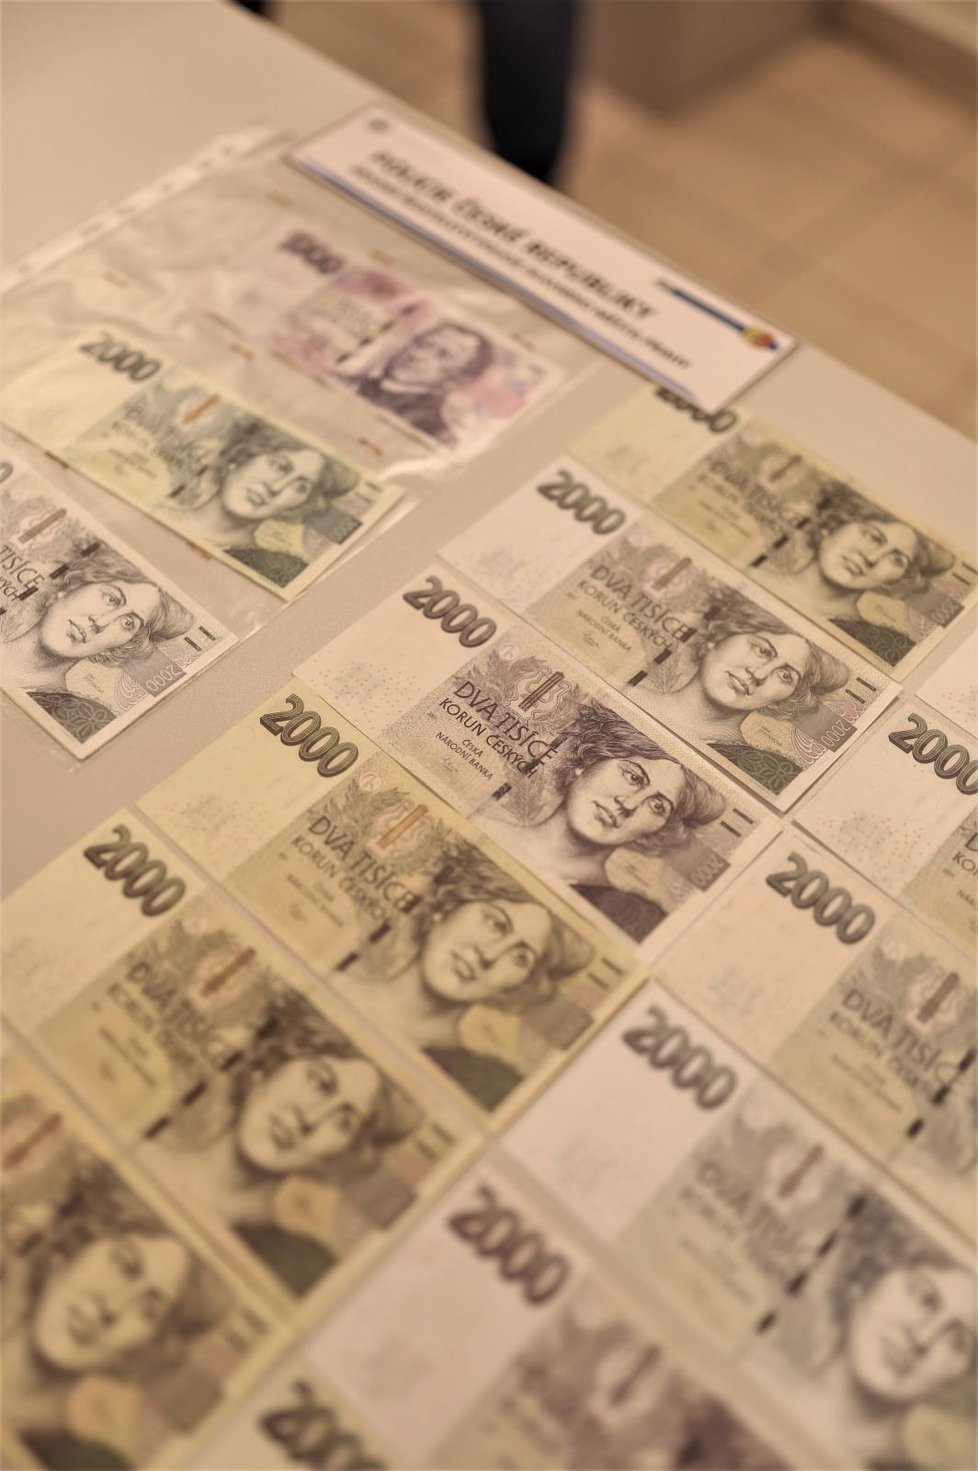 Cestující v MHD zaplatil pokutu falešnou bankovkou. Policie zjistila, že peníze jsou už v oběhu. Cizinci hrozí až 8 let v base